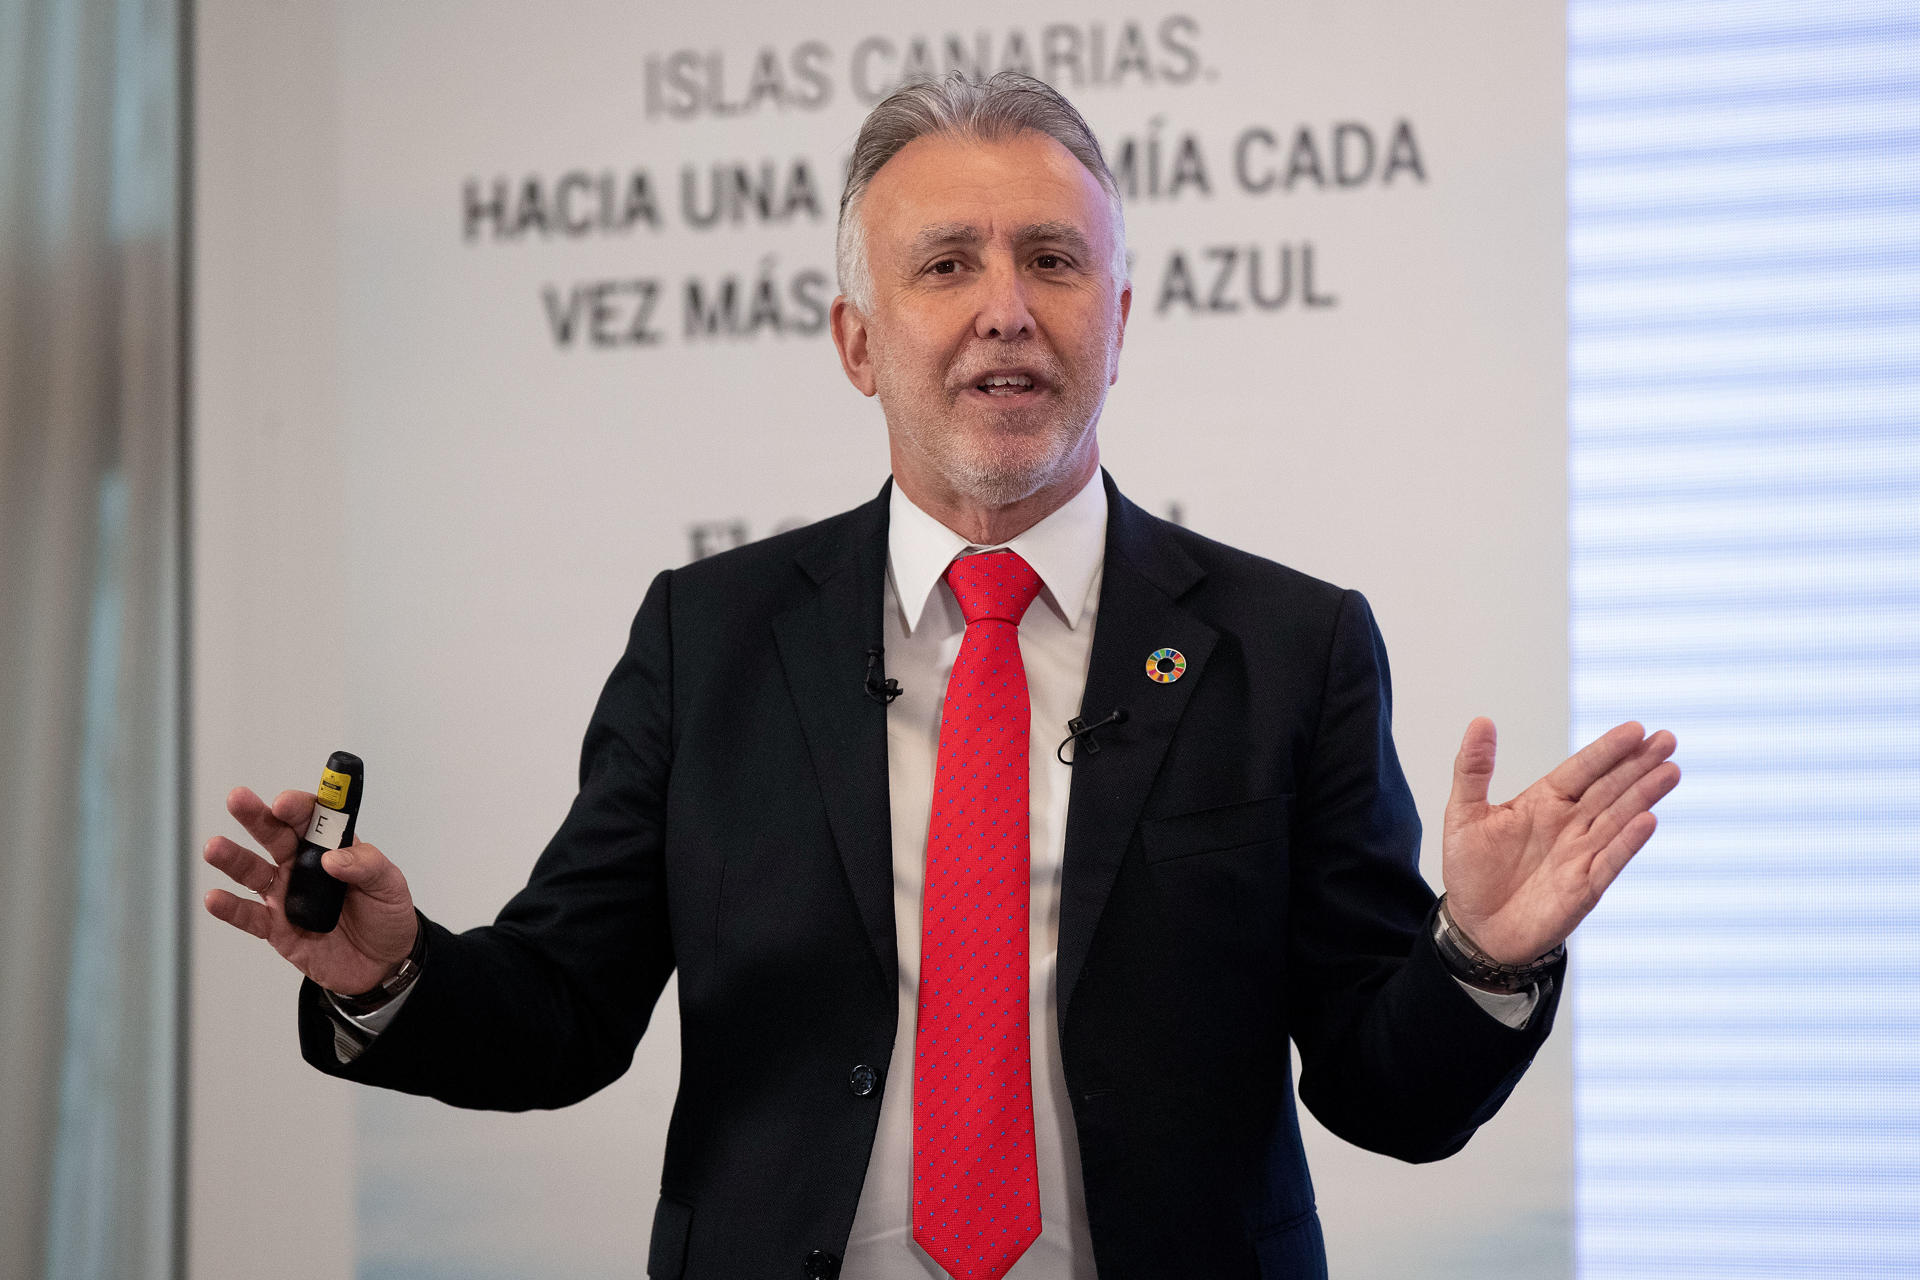 El presidente de Canarias, Ángel Víctor Torres, intervino este miércoles en el foro "Islas Canarias, hacia una economía cada vez más verde y azul" en Madrid. EFE/J.P. Gandul